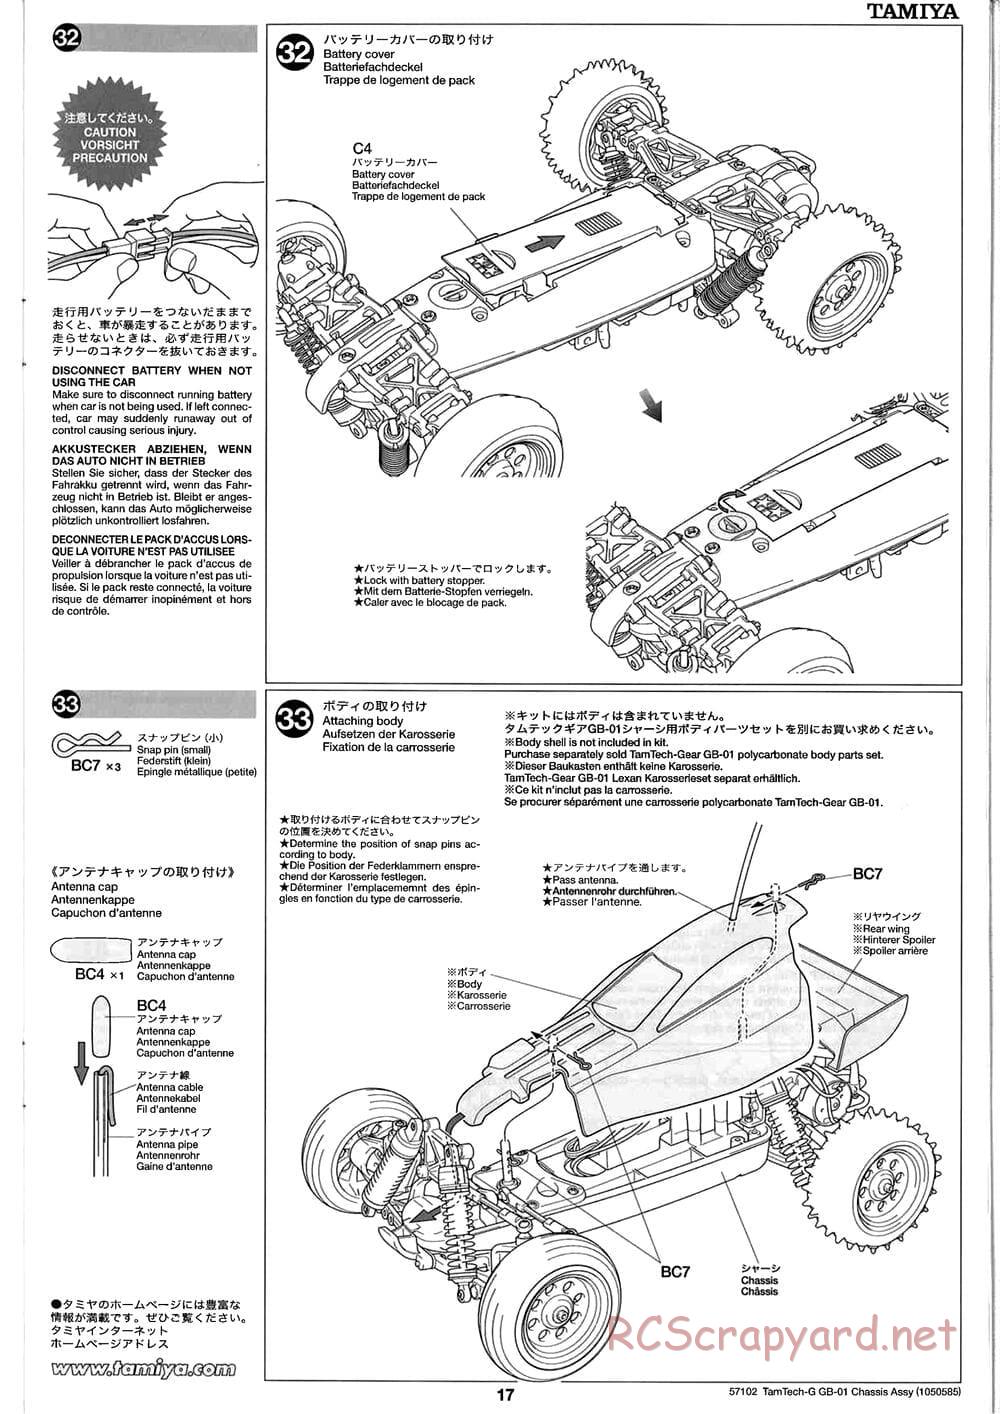 Tamiya - GB-01 Chassis - Manual - Page 17